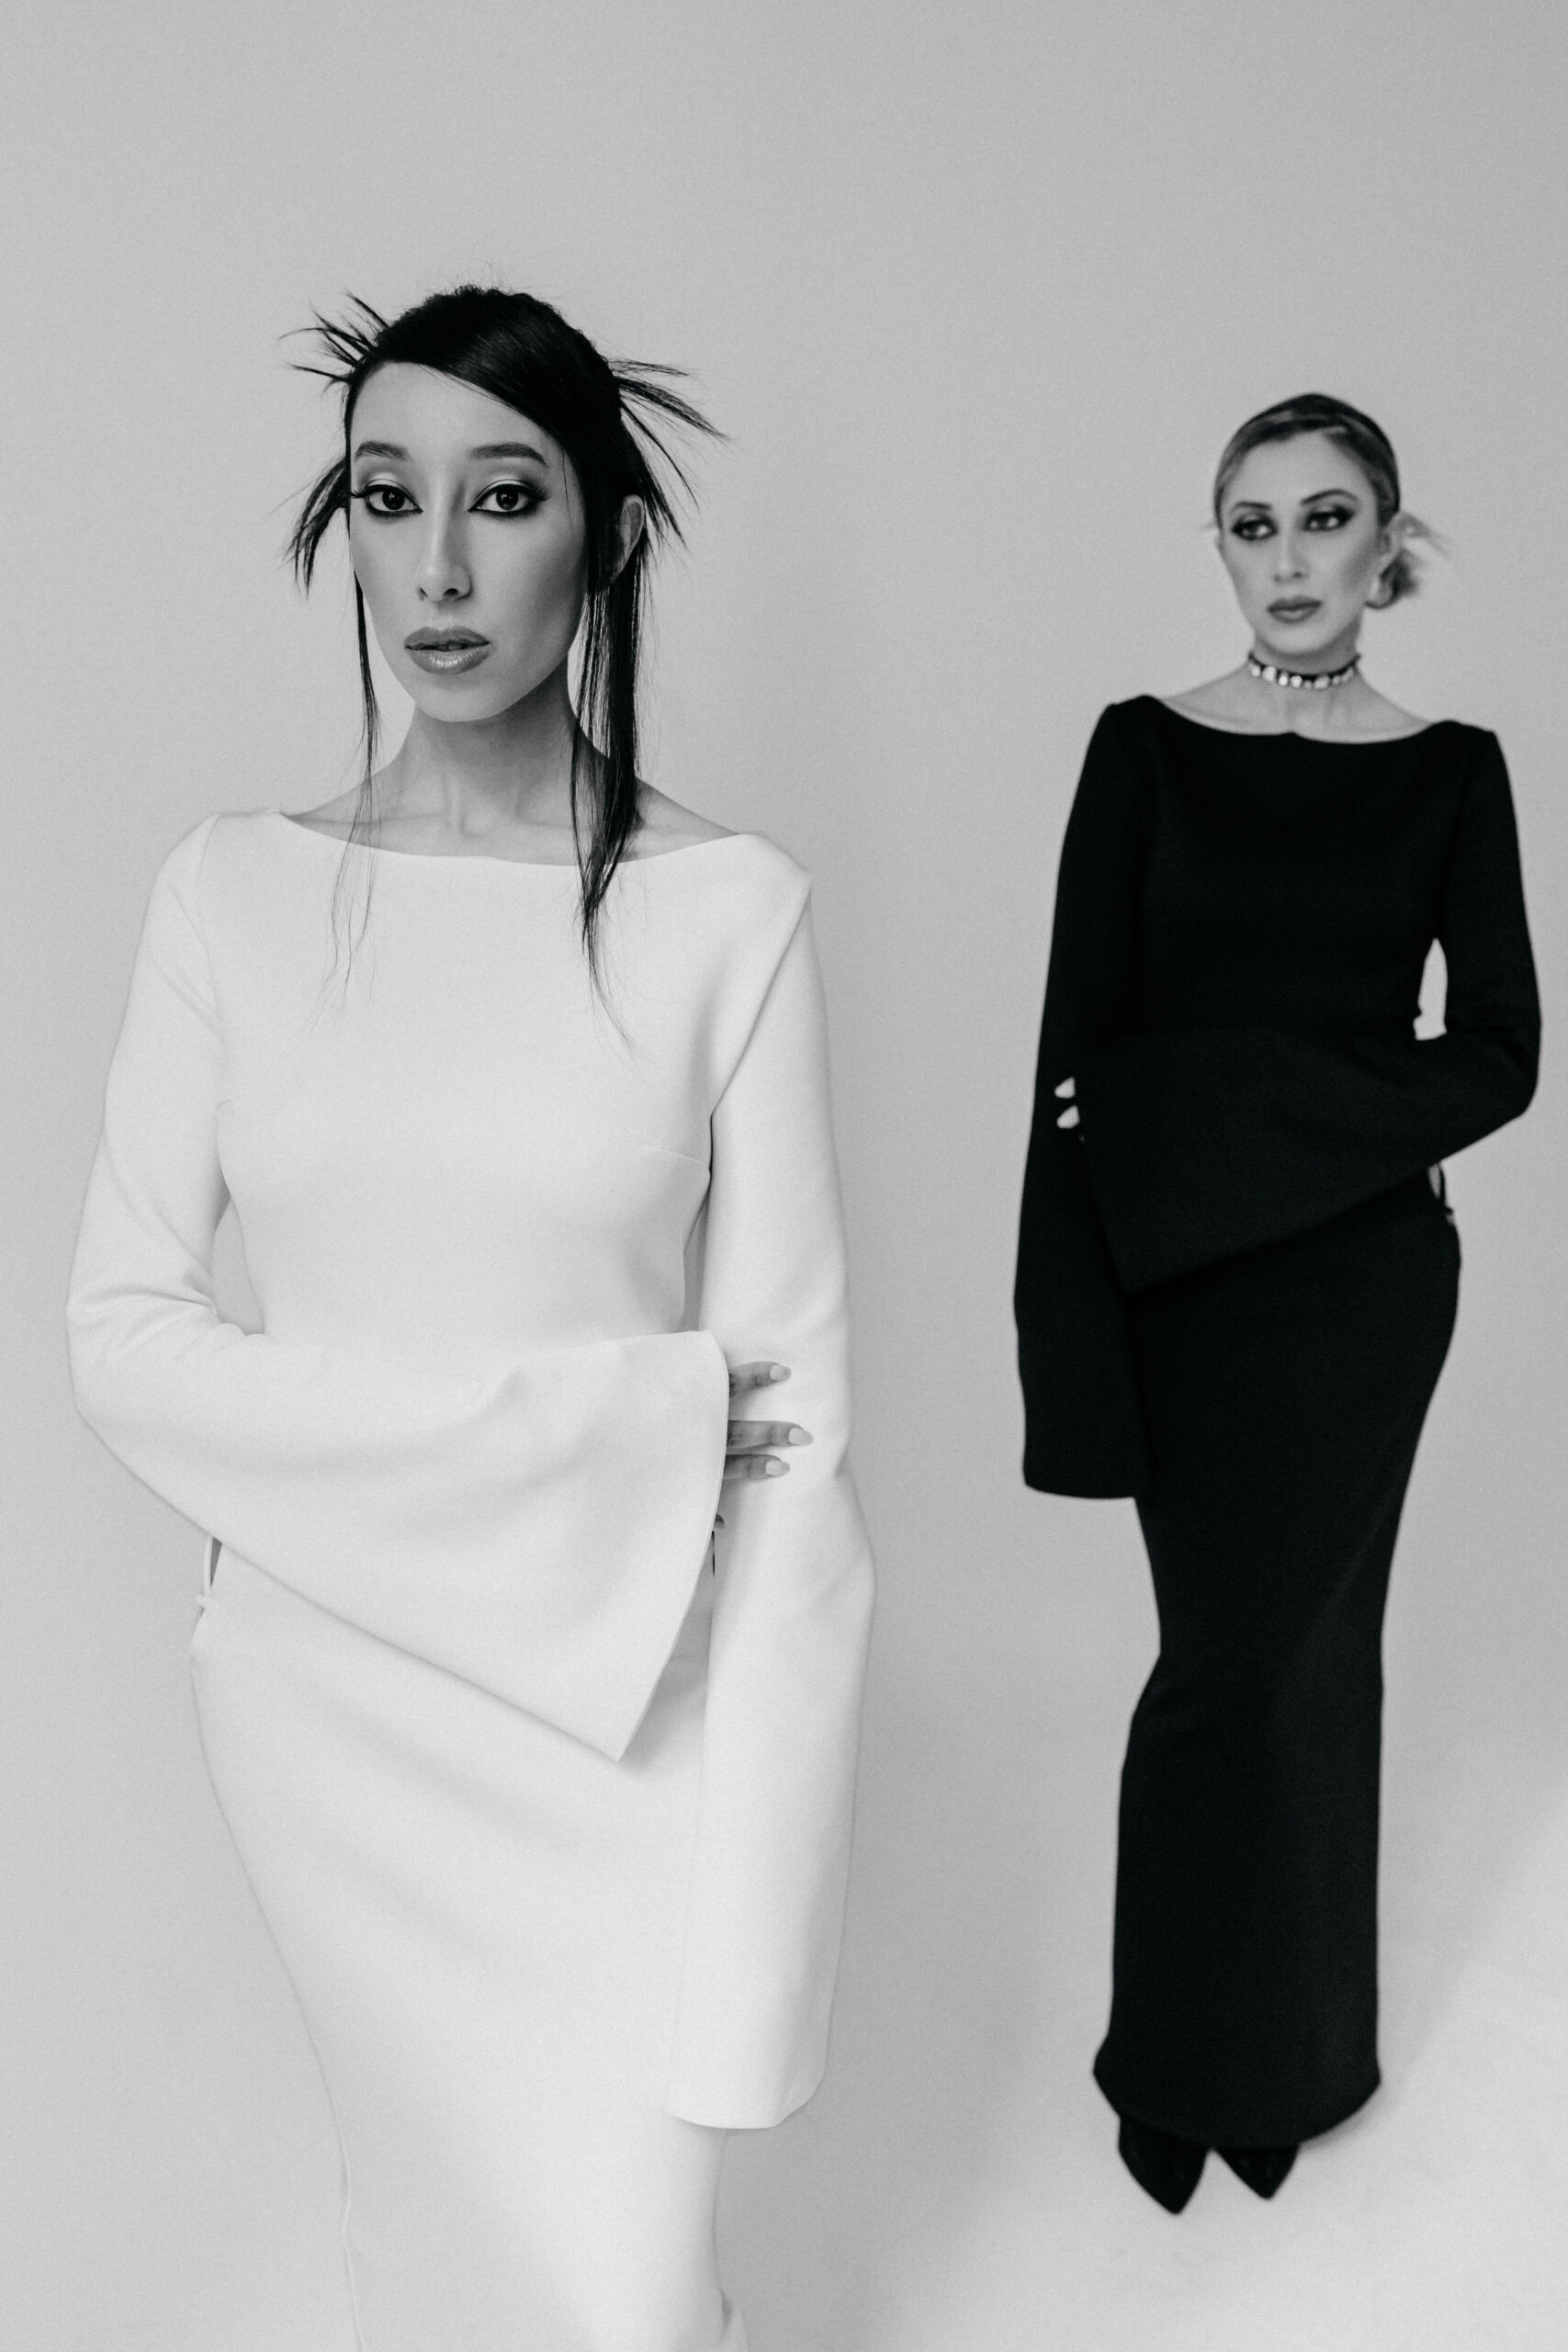 Due modelle indossano abiti LegameBrand in bianco e nero, una con l'abito nero guarda l'altra con l'abito bianco, creando un'immagine di eleganza classica e contrastante